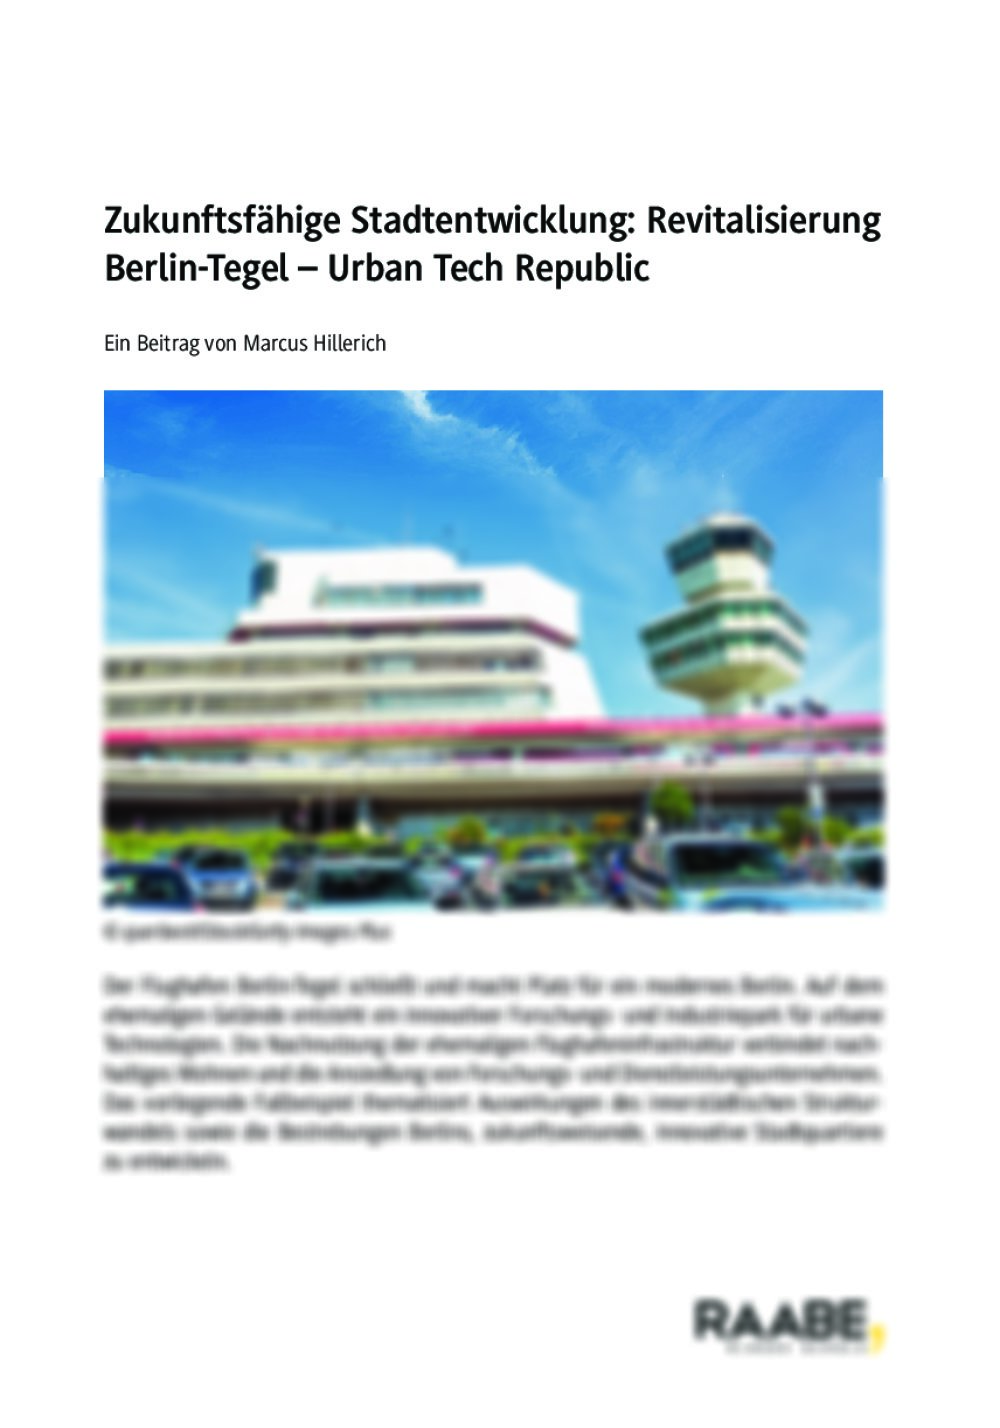 Zukunftsfähige Stadtentwicklung: Revitalisierung von Berlin-Tegel - Seite 1